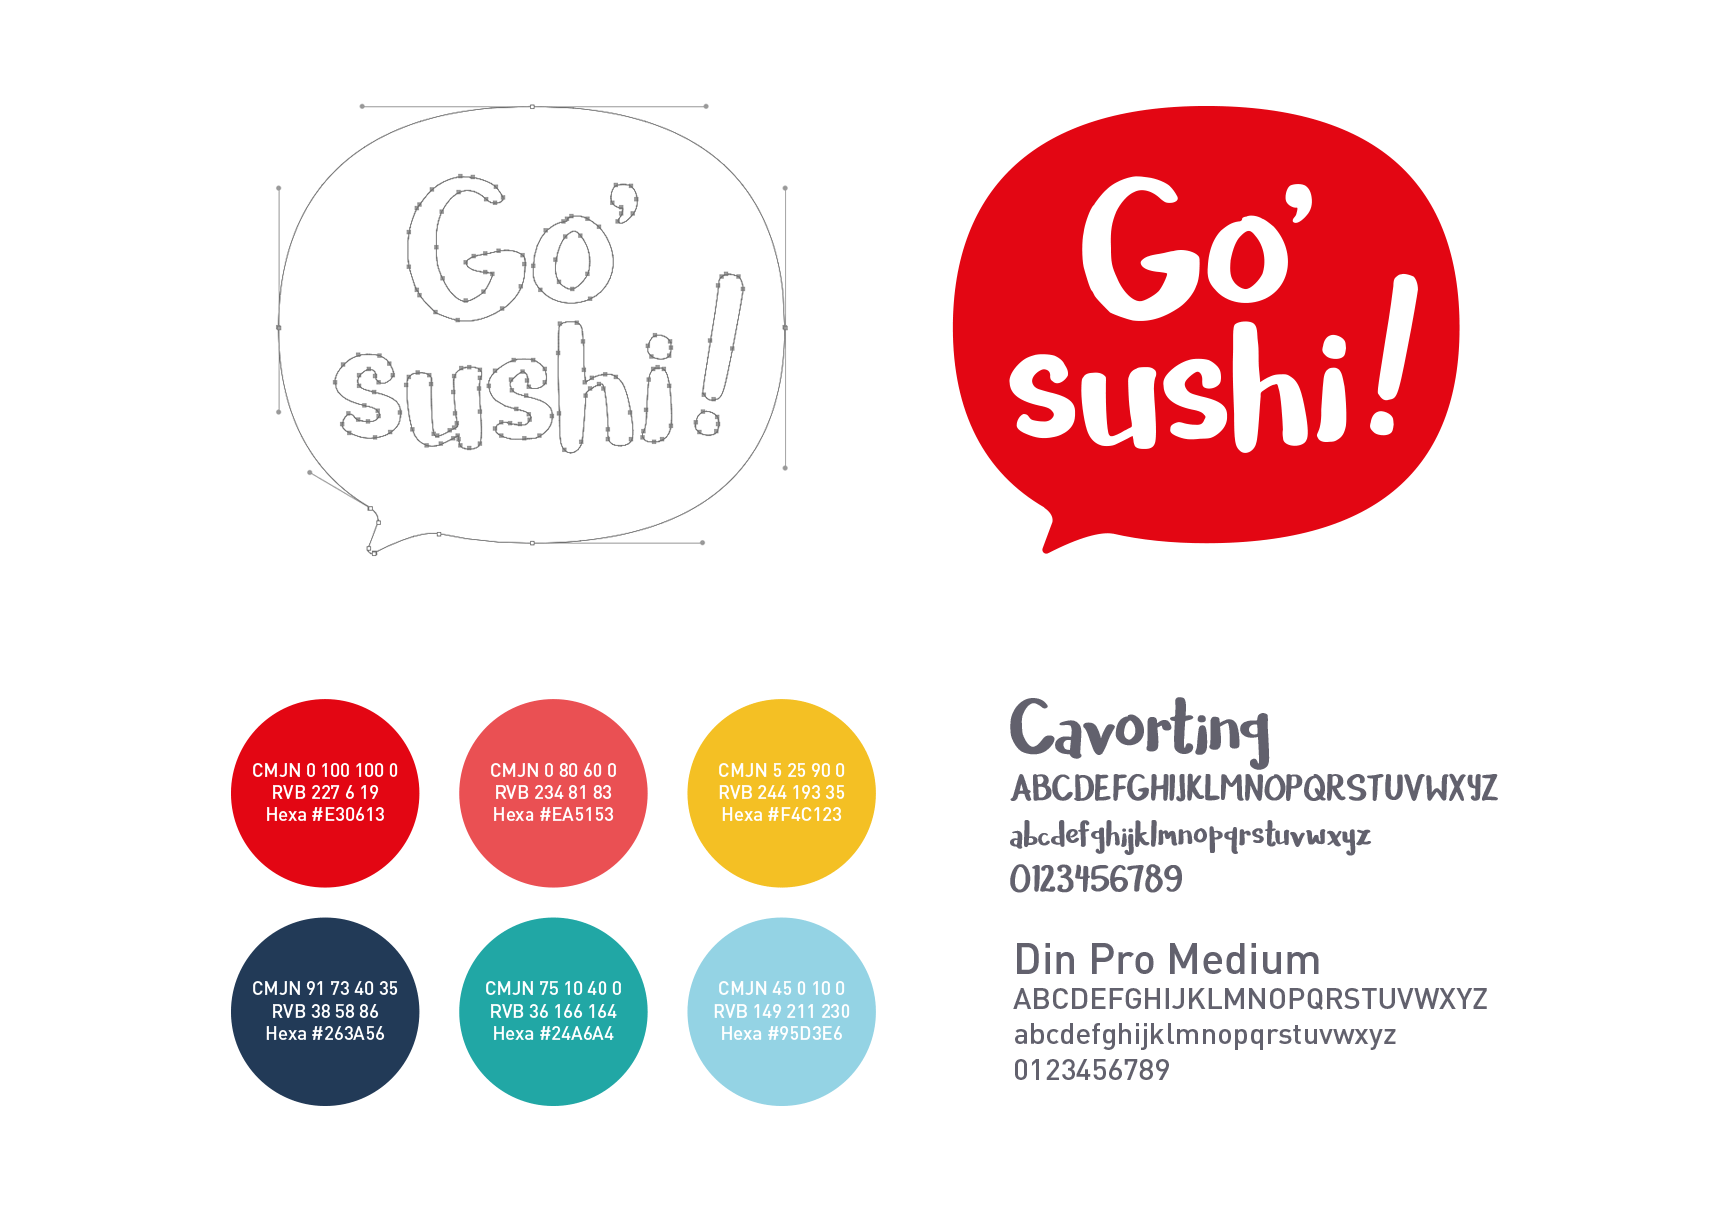 Go sushi !